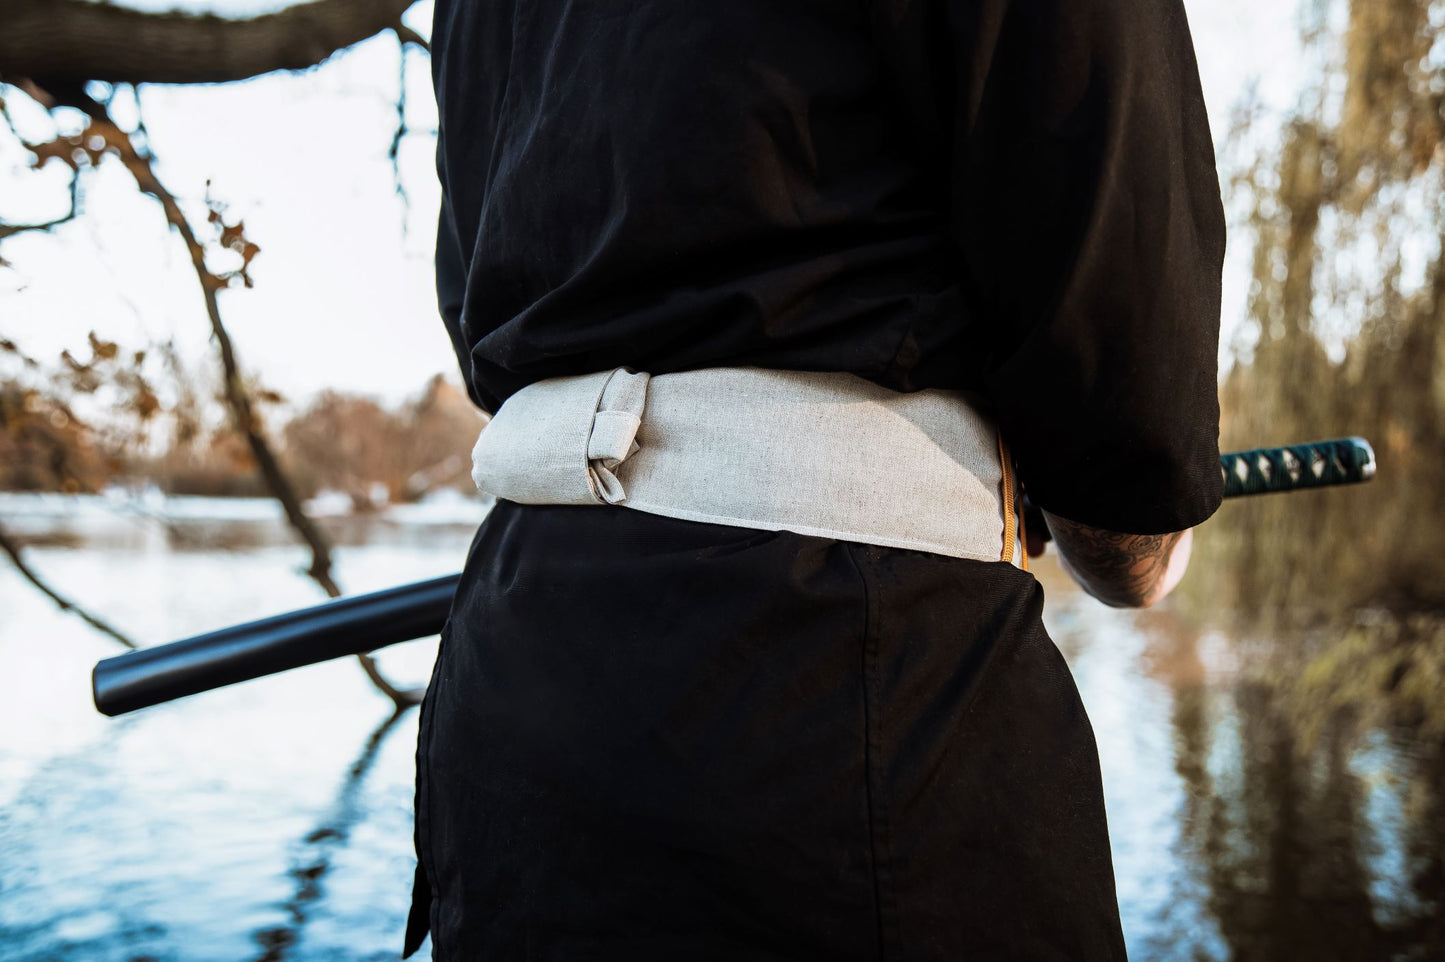 Japanese Obi sword belt